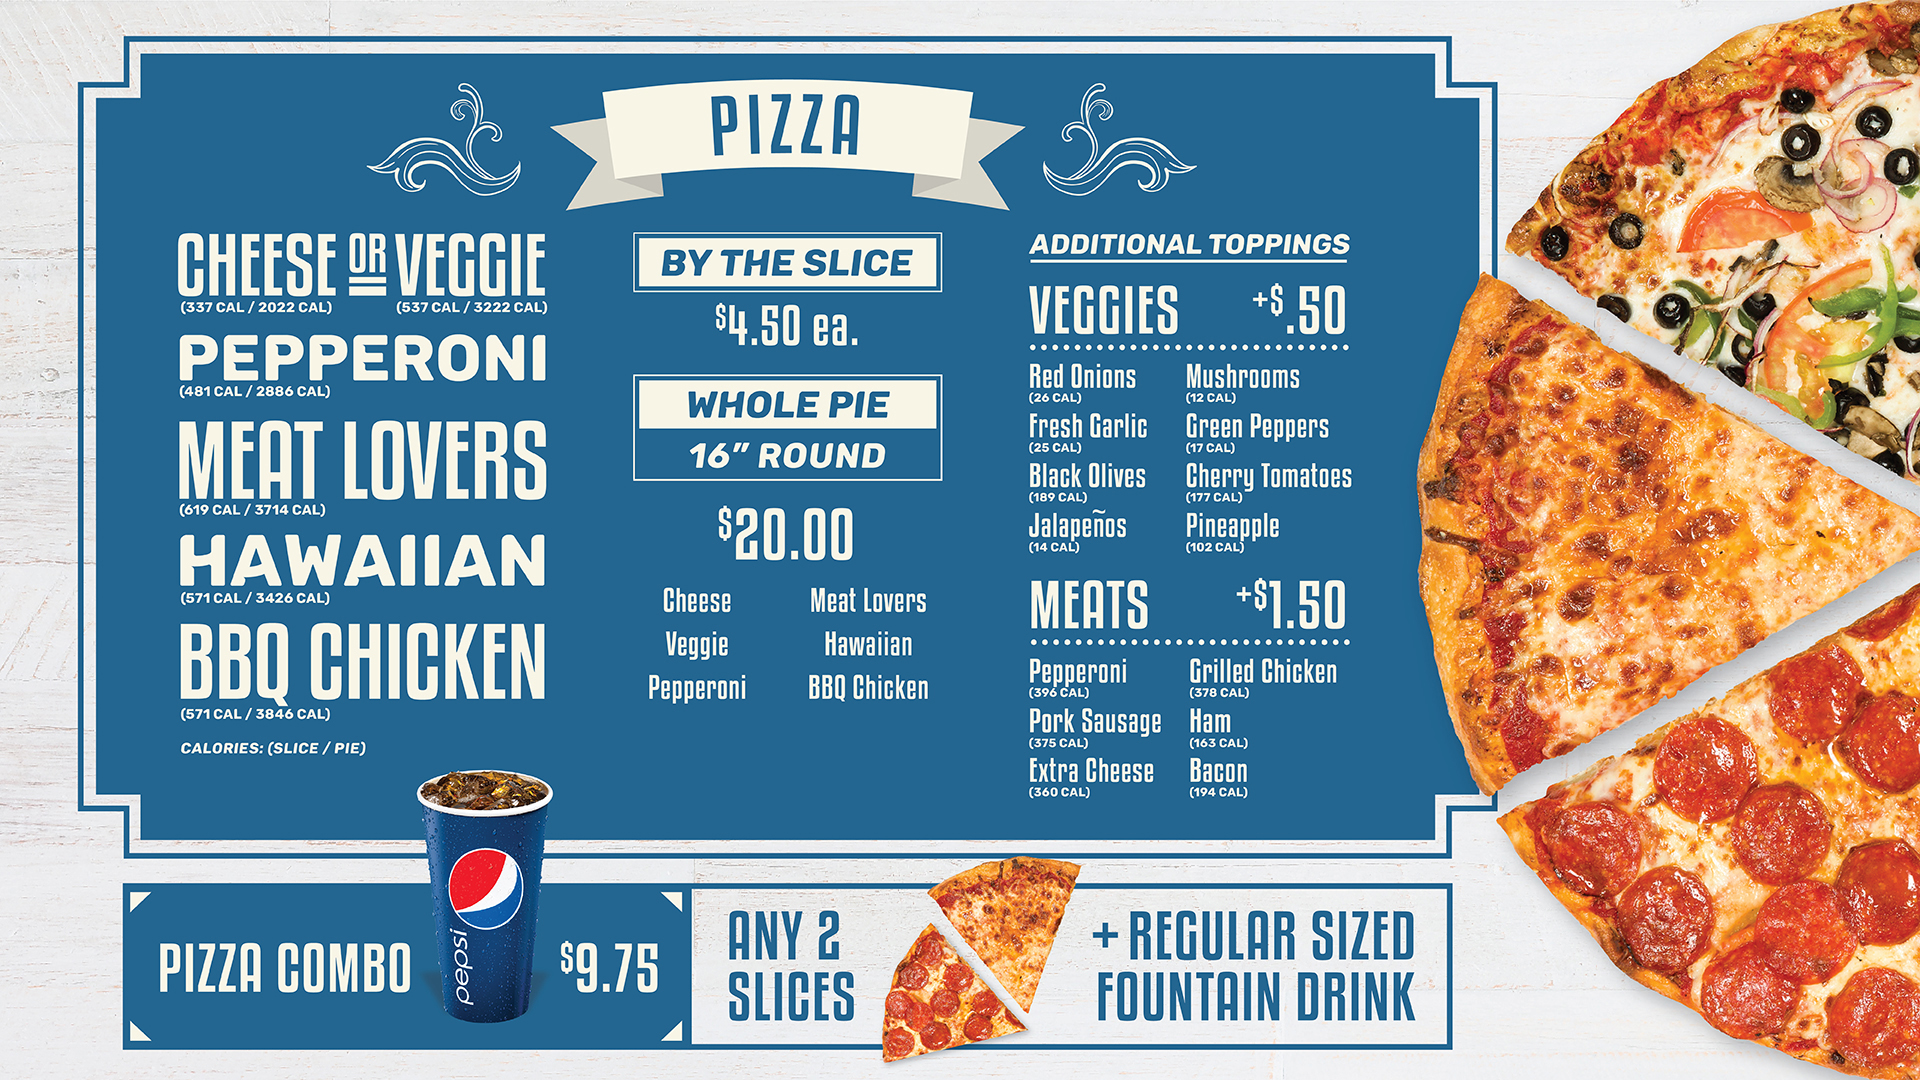 Sixteen inch round pizza - $20.00.